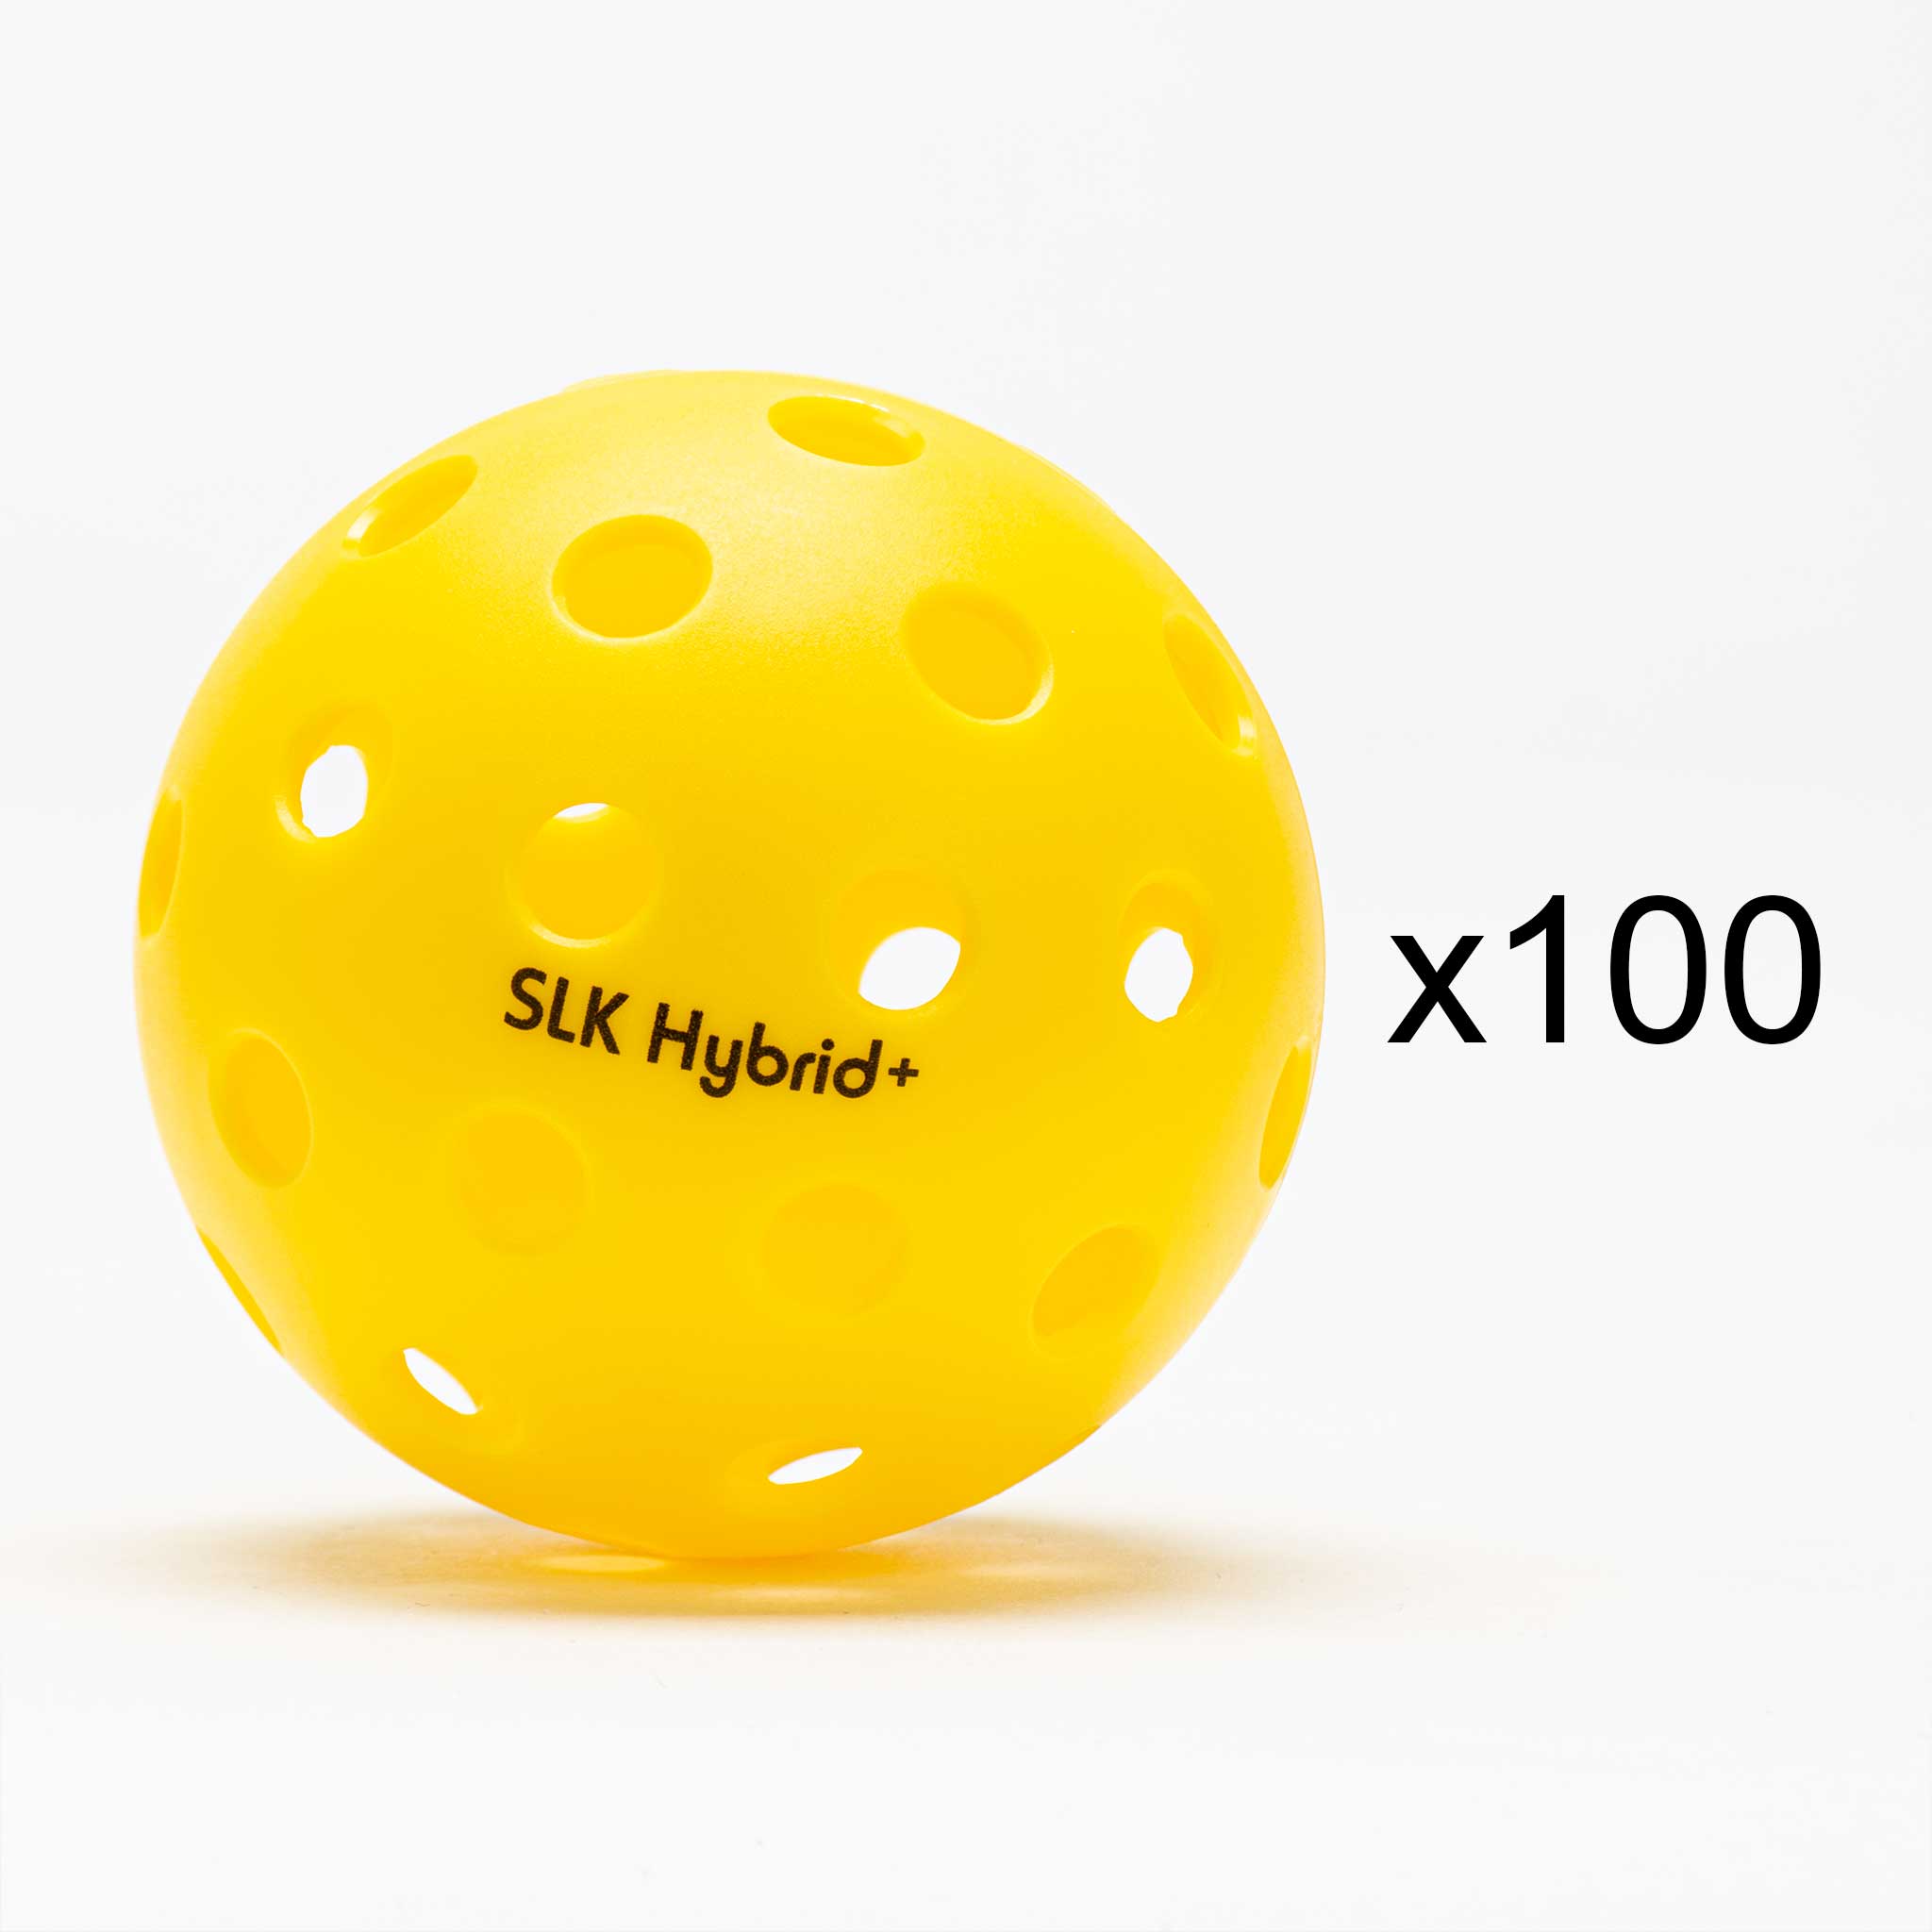 Selkirk SLK Hybrid+ Outdoor Ball 100 Pack